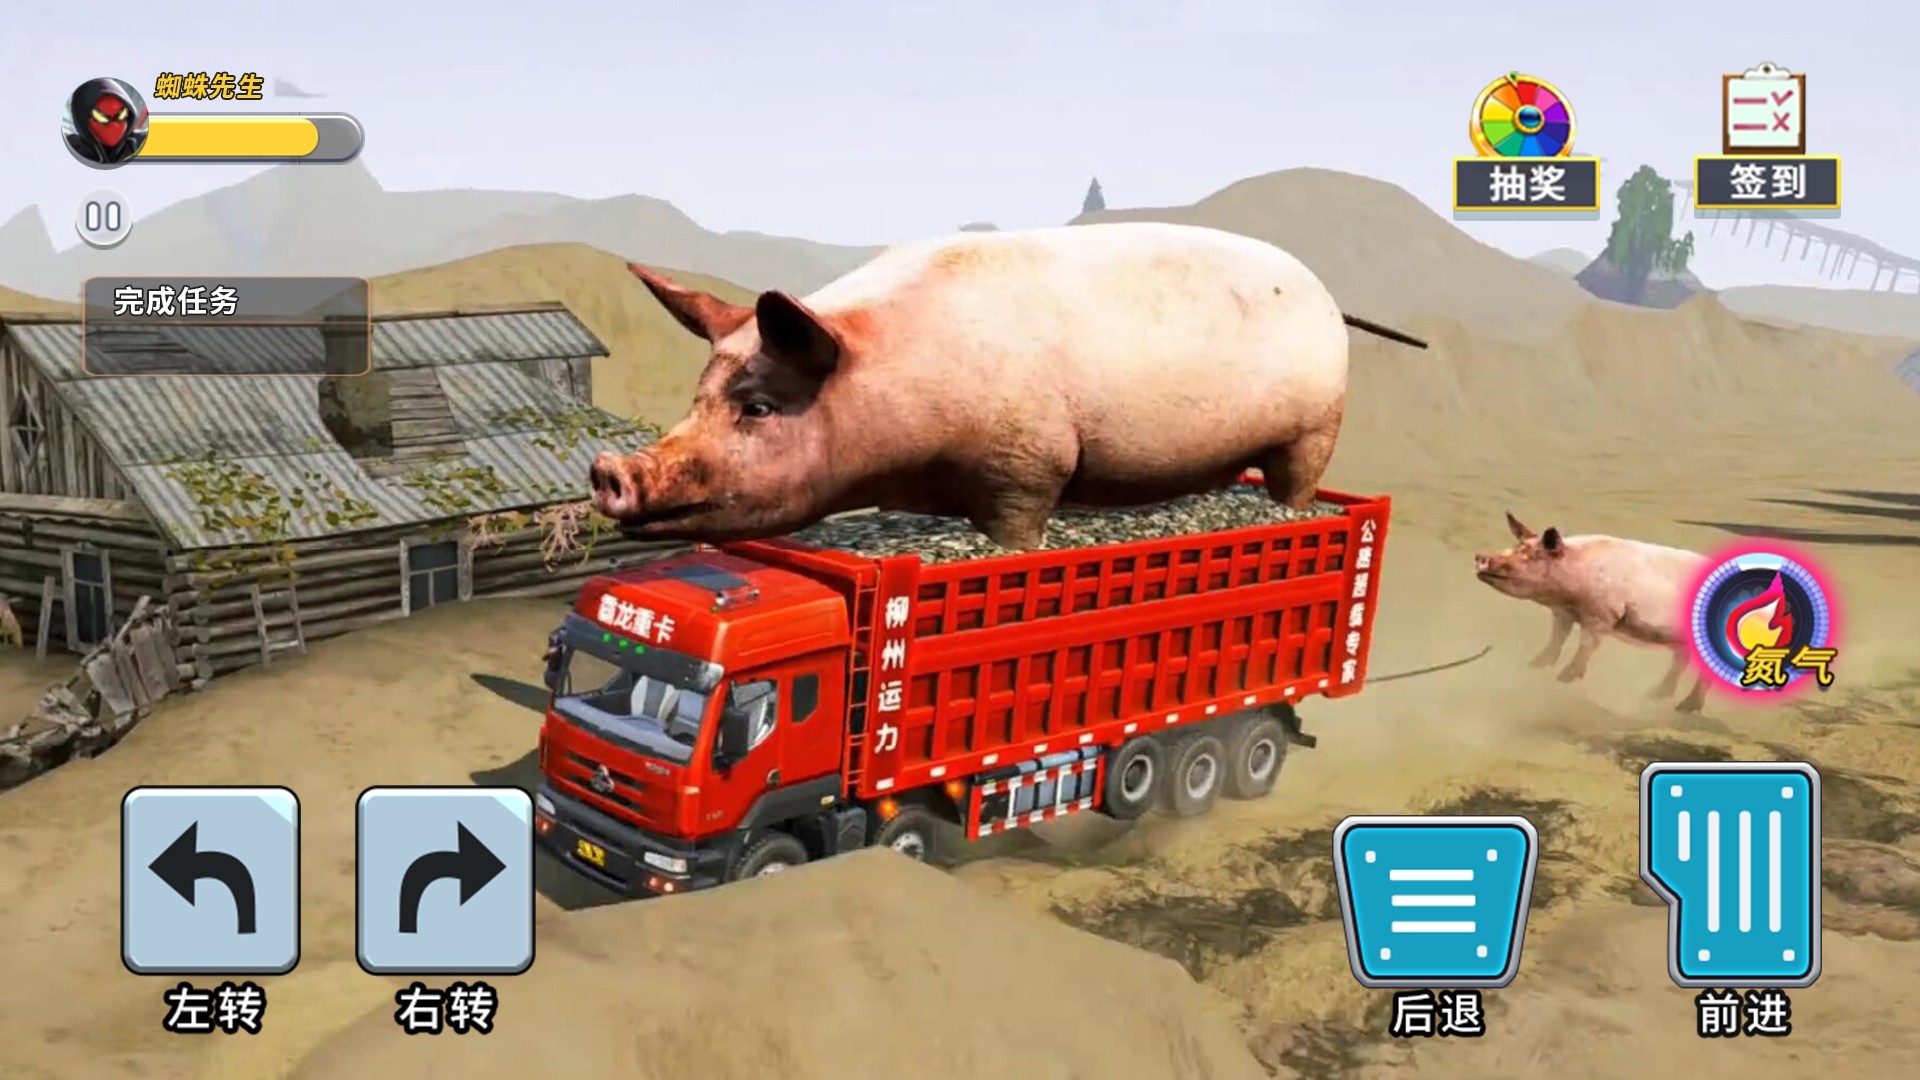 泥头卡车模拟器游戏下载手机版 v1.0